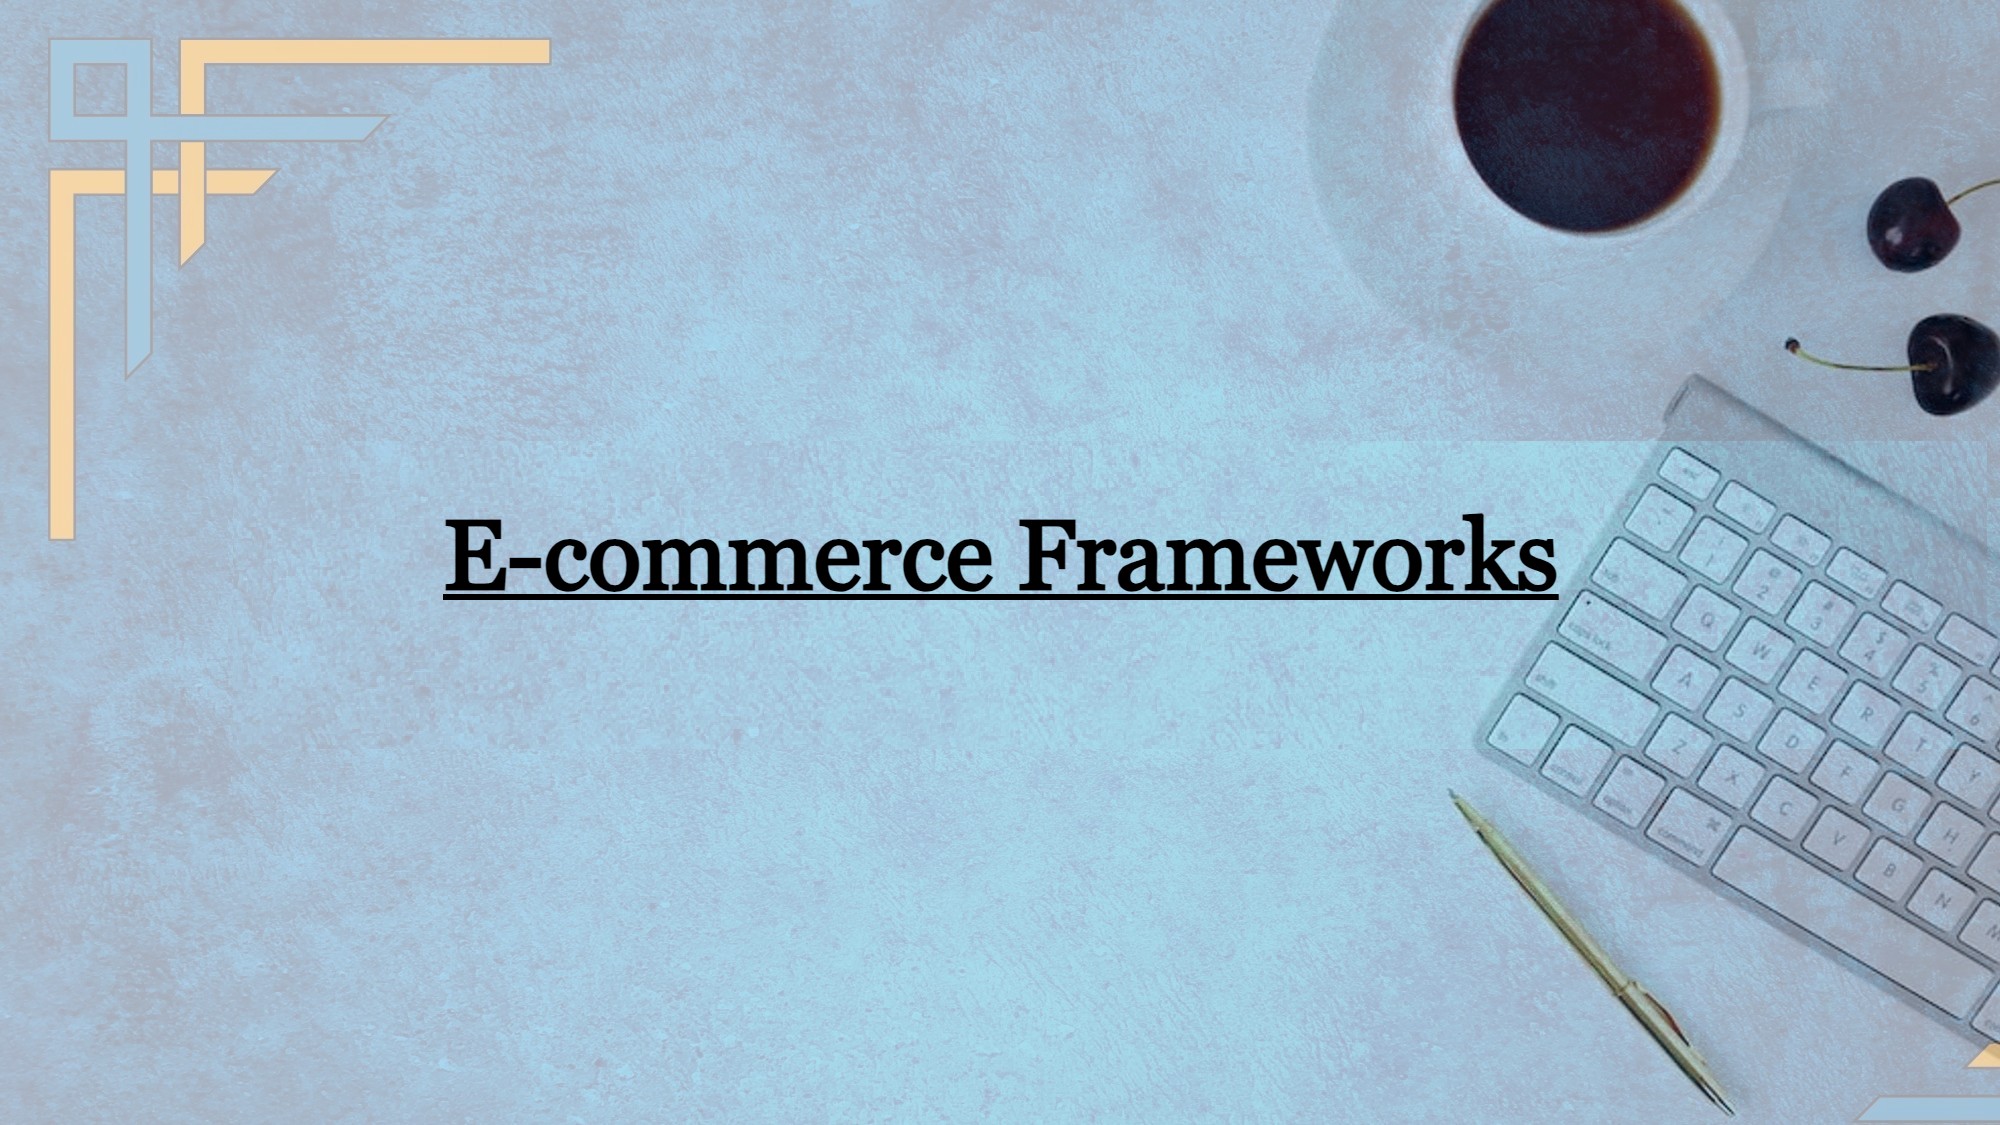 E-commerce Framework